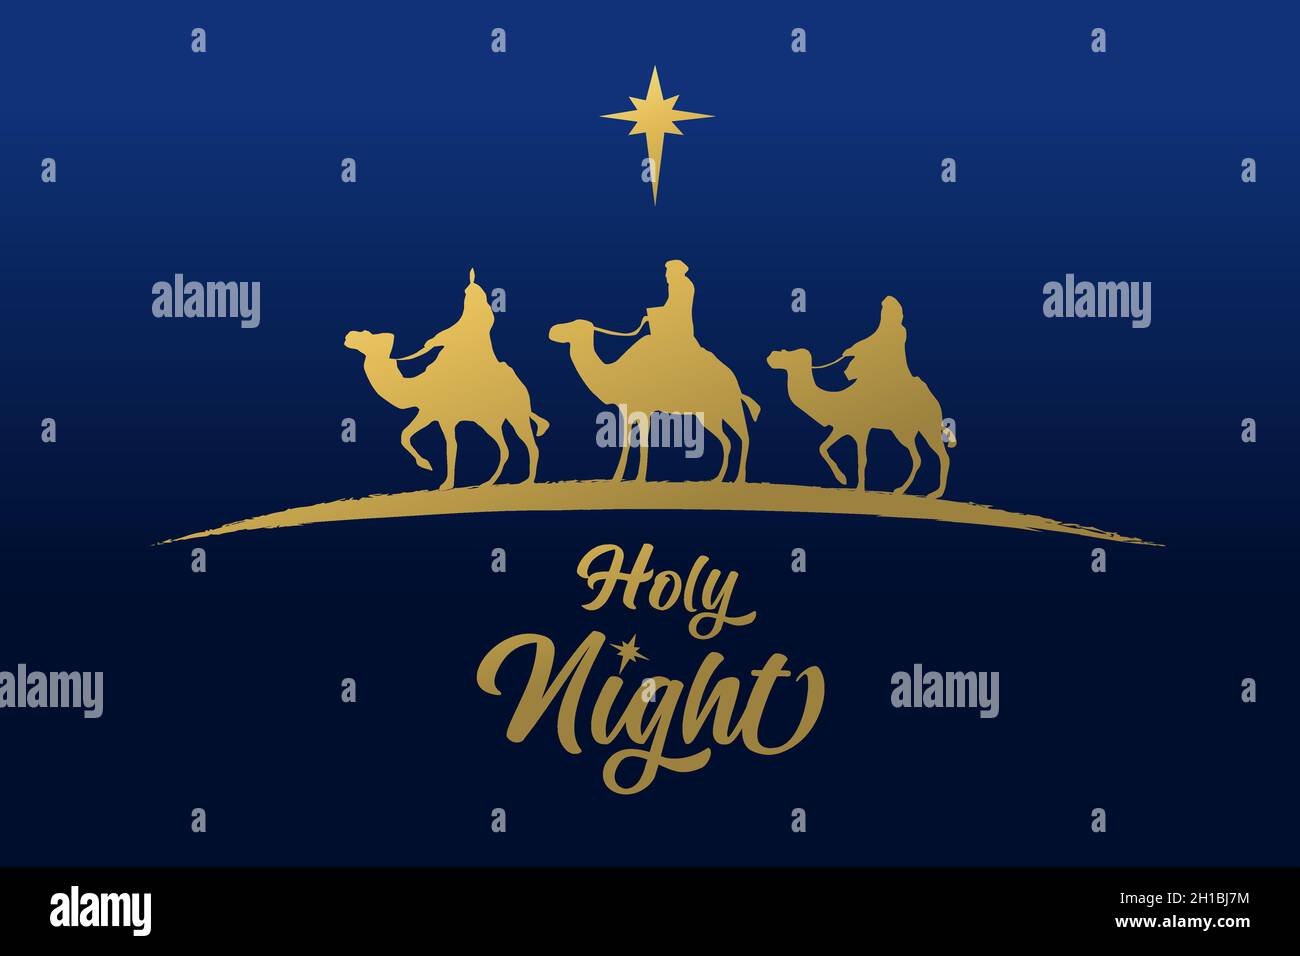 Trois hommes sages silhouette dorée, carte de vacances de la nuit Sainte.Joyeux Noël, étoile d'or et trois rois sur ciel bleu.Scène de Nativité, naissance de bébé Jésus Illustration de Vecteur